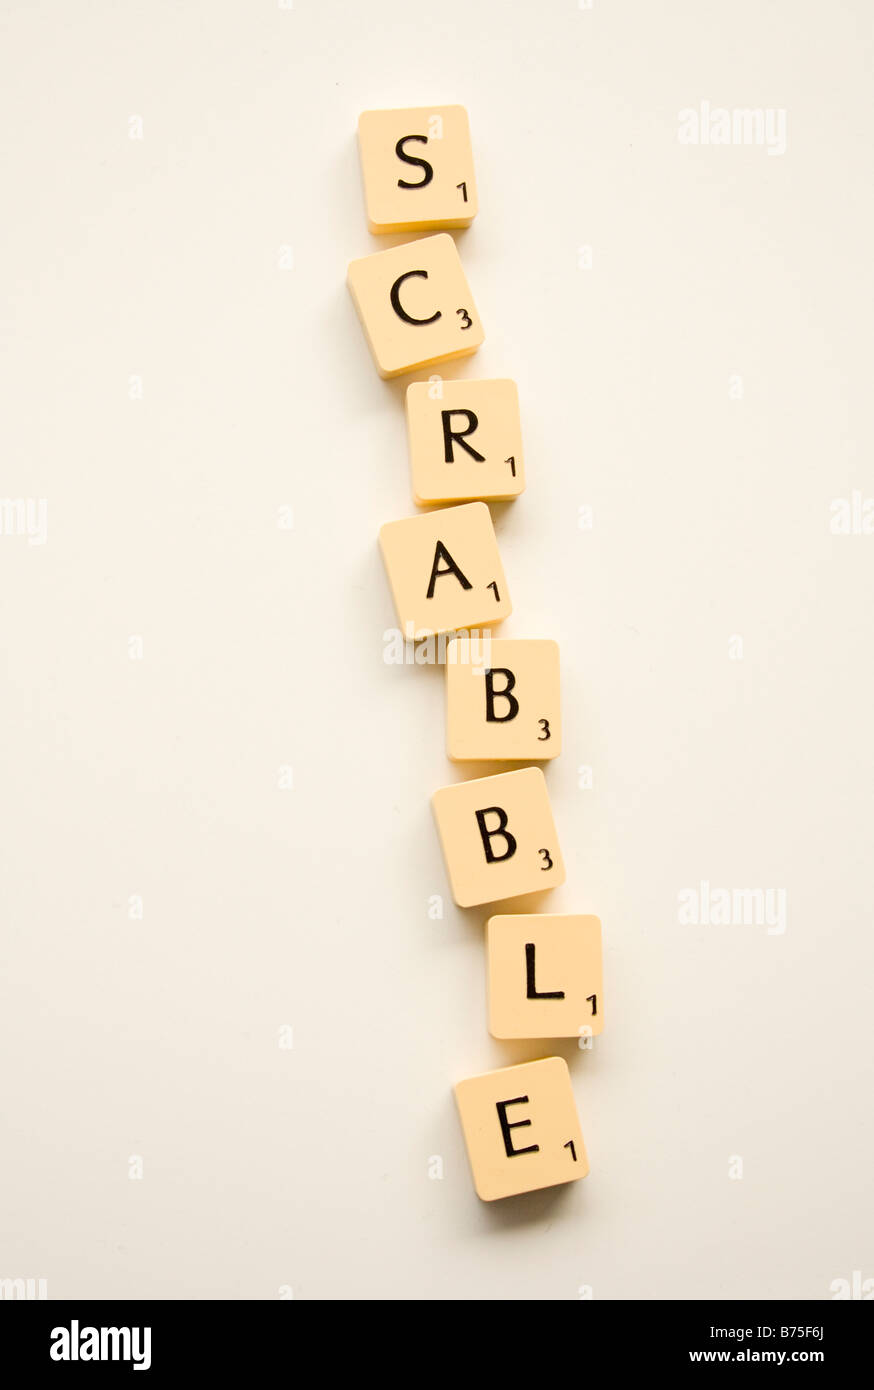 Scrabble Tiles arranged vertically. Stock Photo